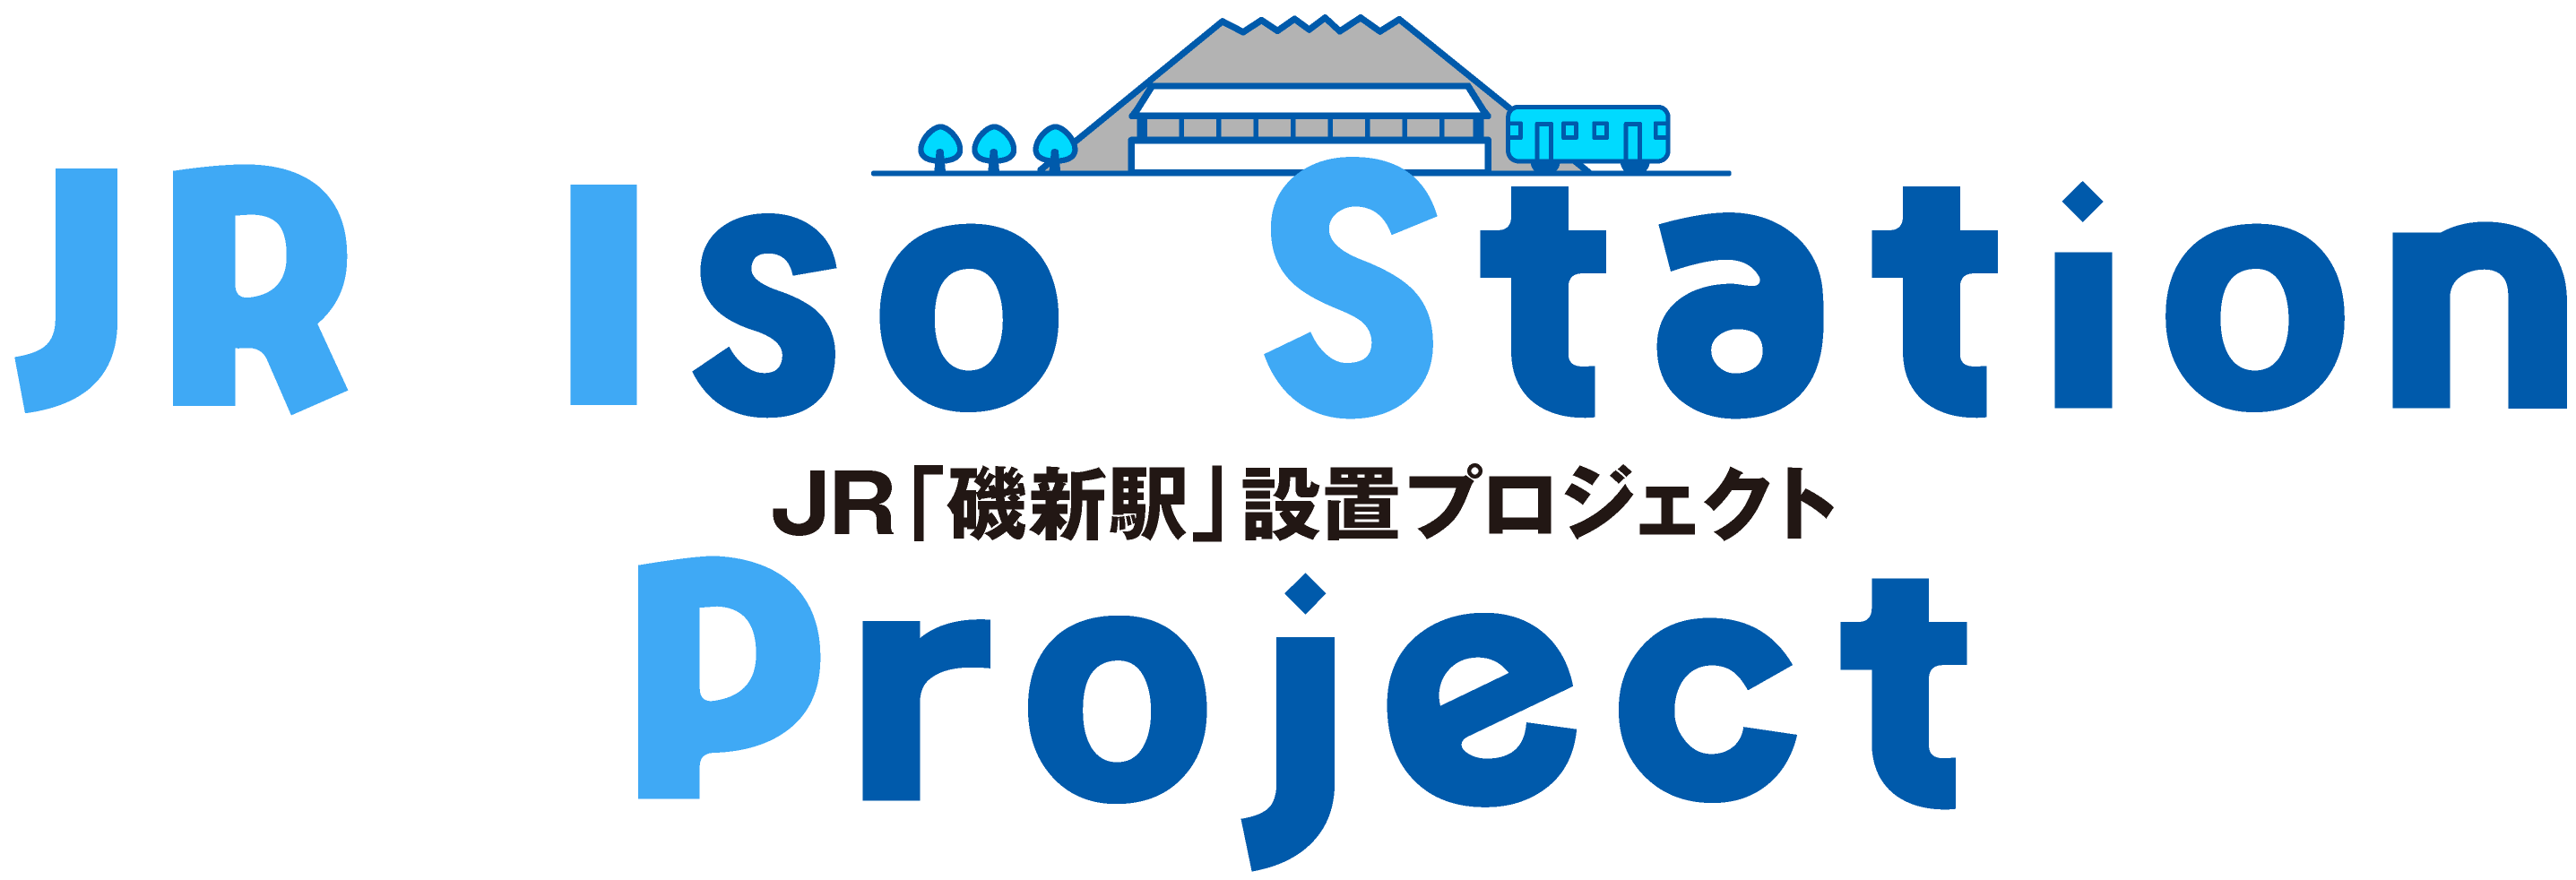 JR「磯新駅」設置プロジェクト